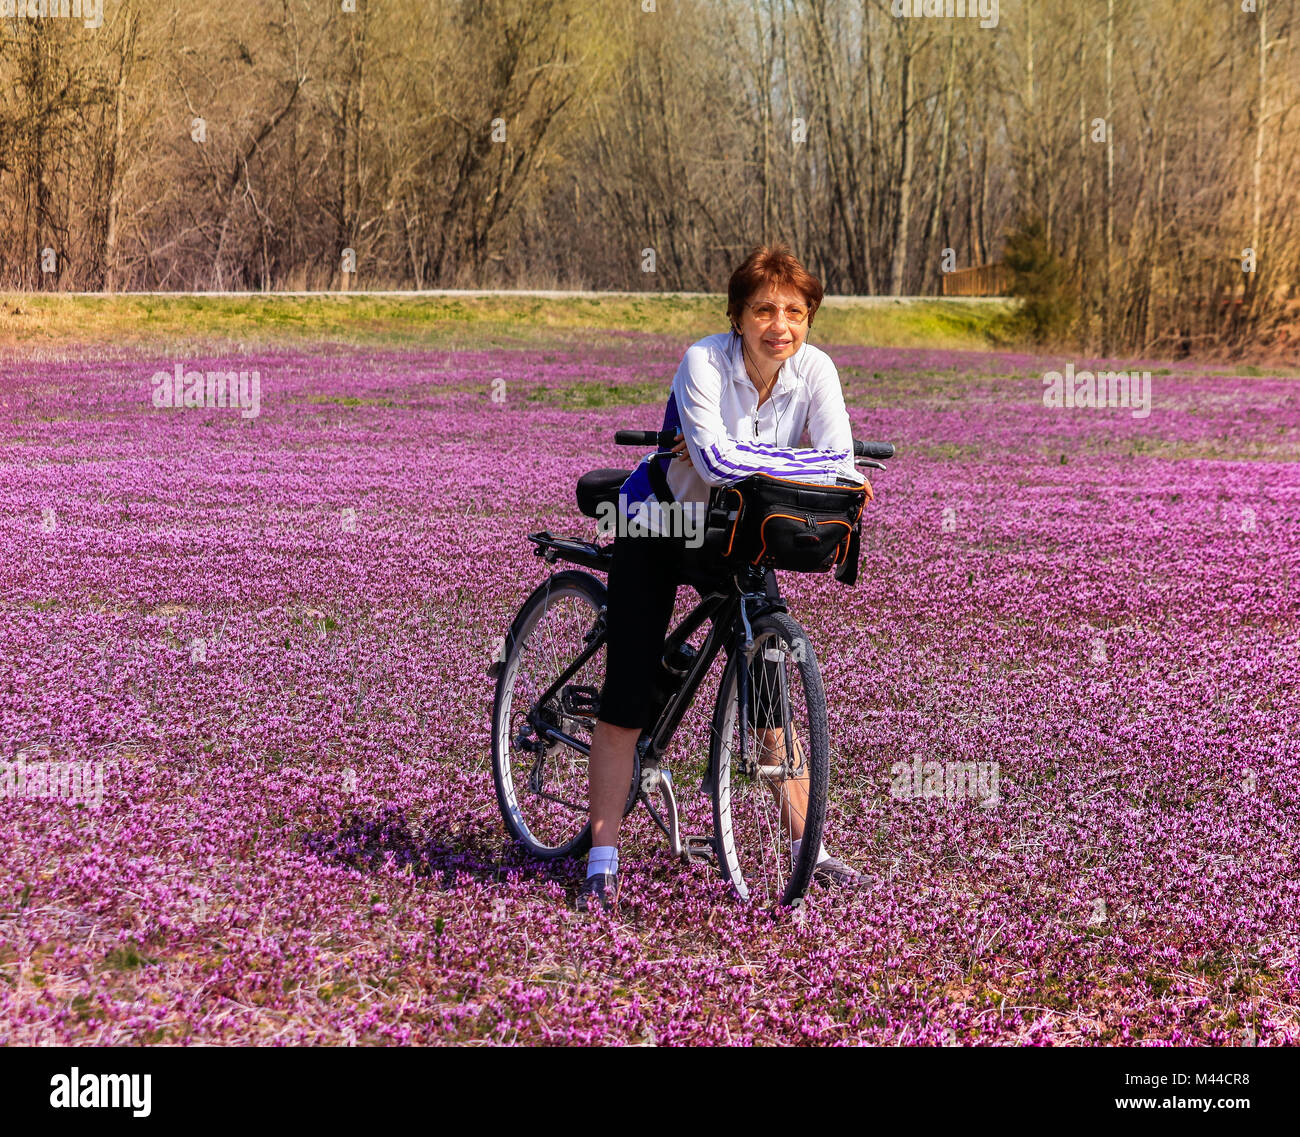 Les femmes plus âgées est un cycliste dans le champ de fleurs sauvages s'appuyant sur son vélo et souriant ; printemps dans le Missouri, Midwest Banque D'Images